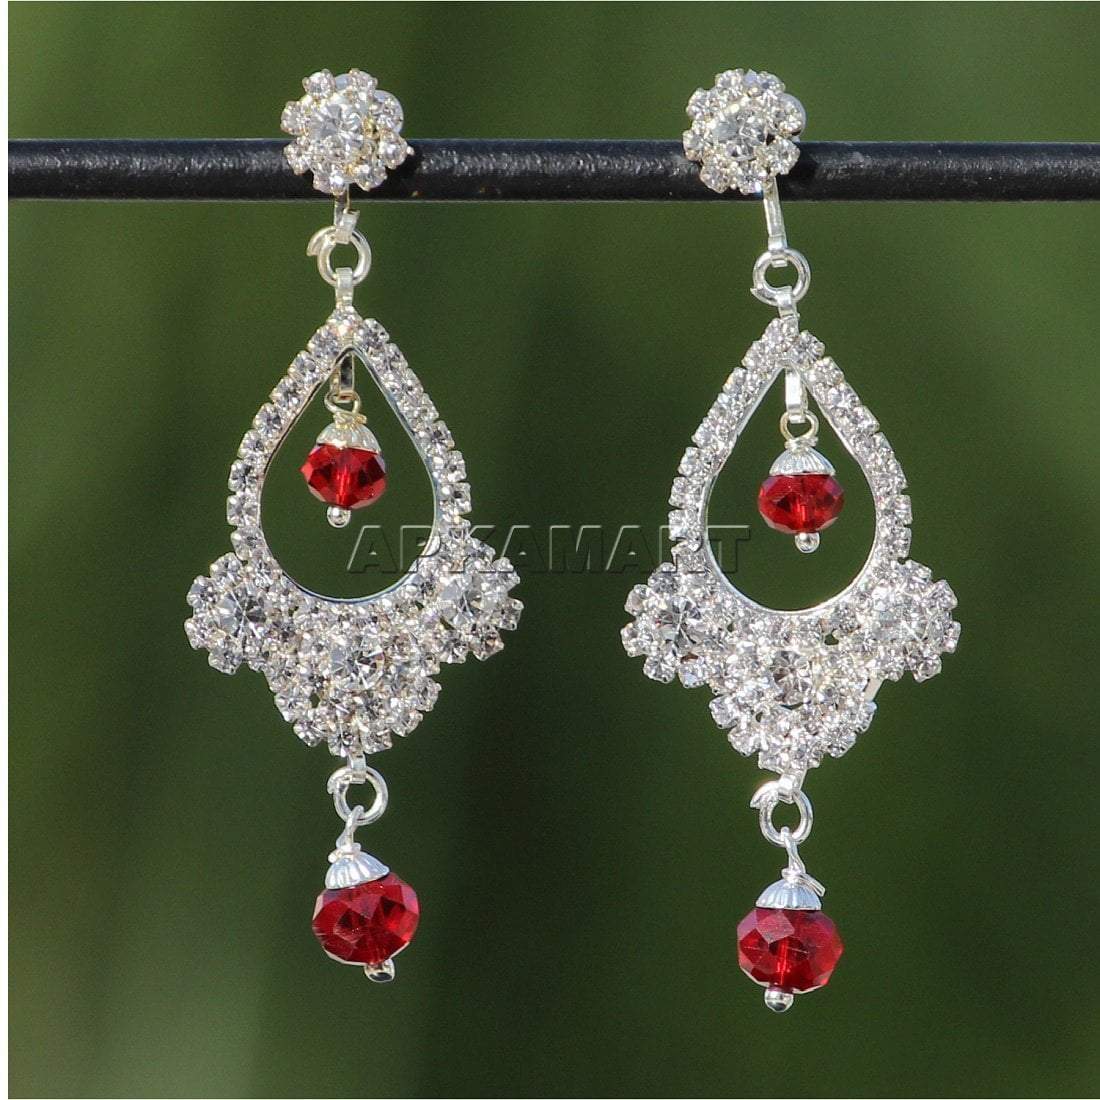 Earrings - Dangle Chandelier - American Diamond -  Jewellery For Women & Girls - ApkaMart